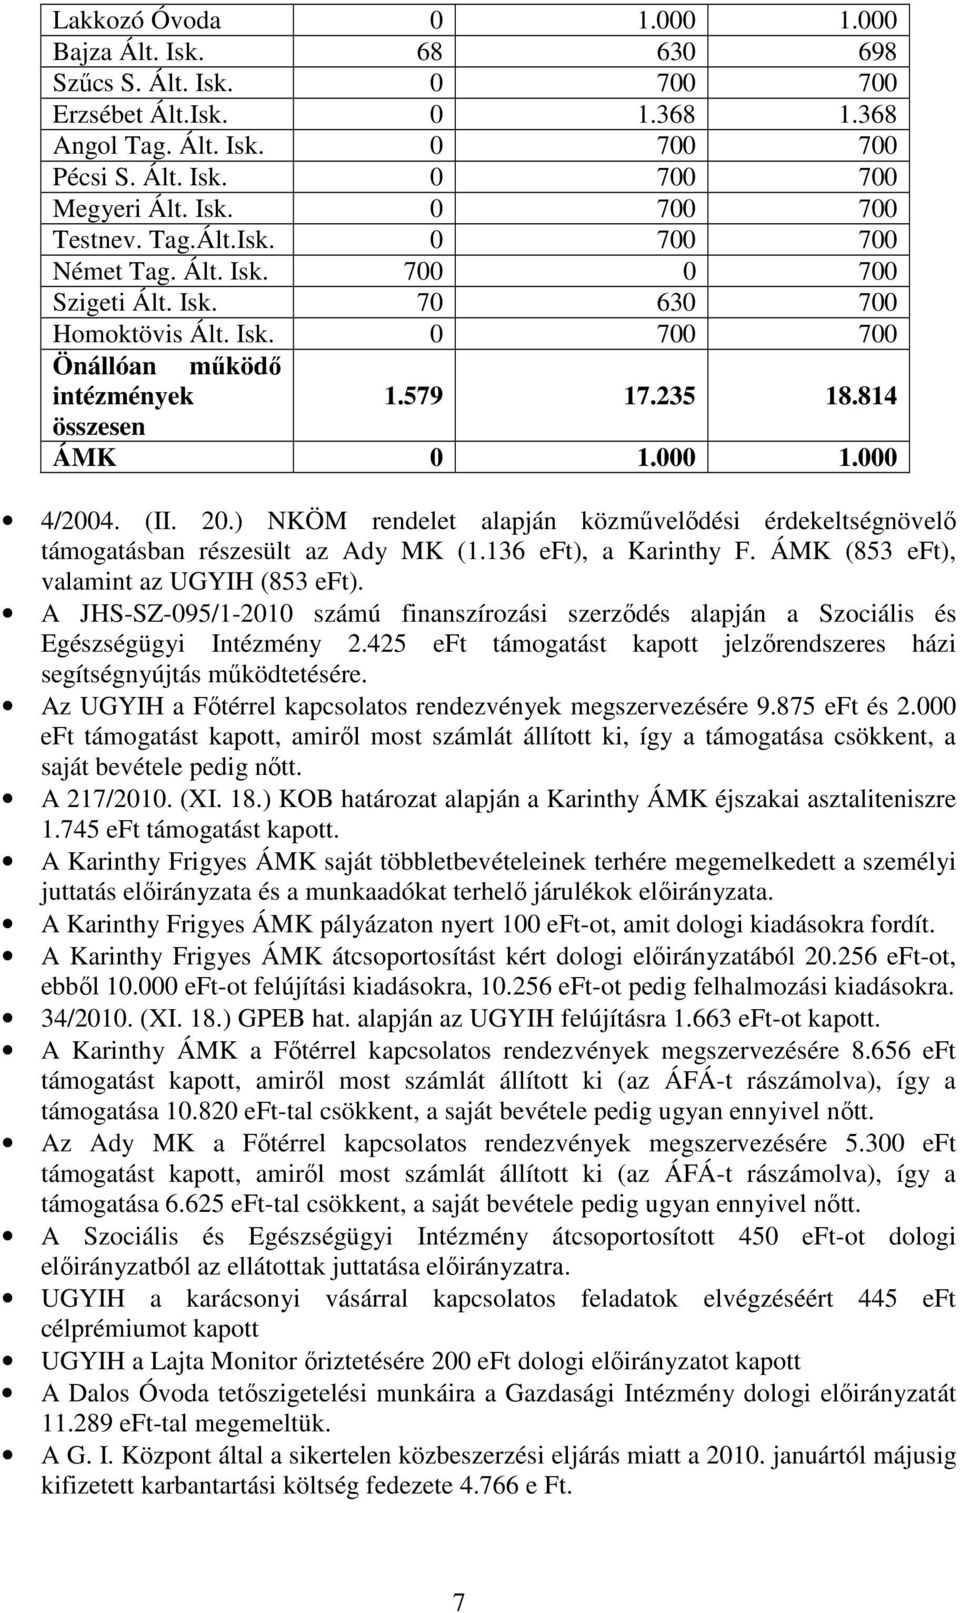 (II. 20.) NKÖM rendelet alapján közmővelıdési érdekeltségnövelı támogatásban részesült az Ady MK (1.136 eft), a Karinthy F. ÁMK (853 eft), valamint az UGYIH (853 eft).